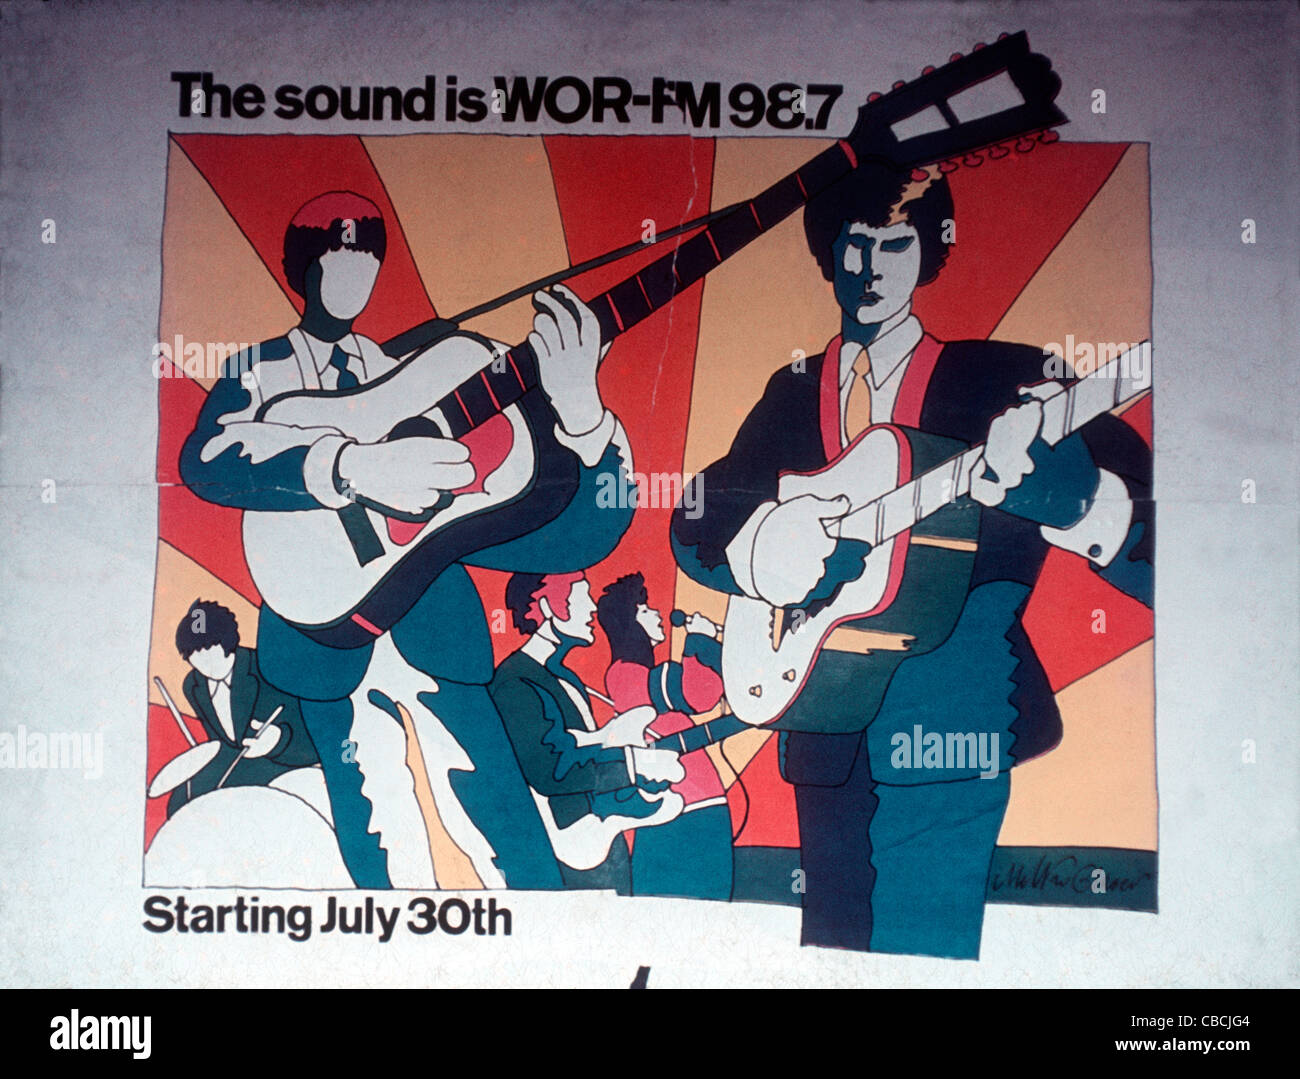 Un passage inférieur affiche publicitaire pour New York's première alternative rock FM, station de radio WOR-FM à partir de juillet 1967 Banque D'Images